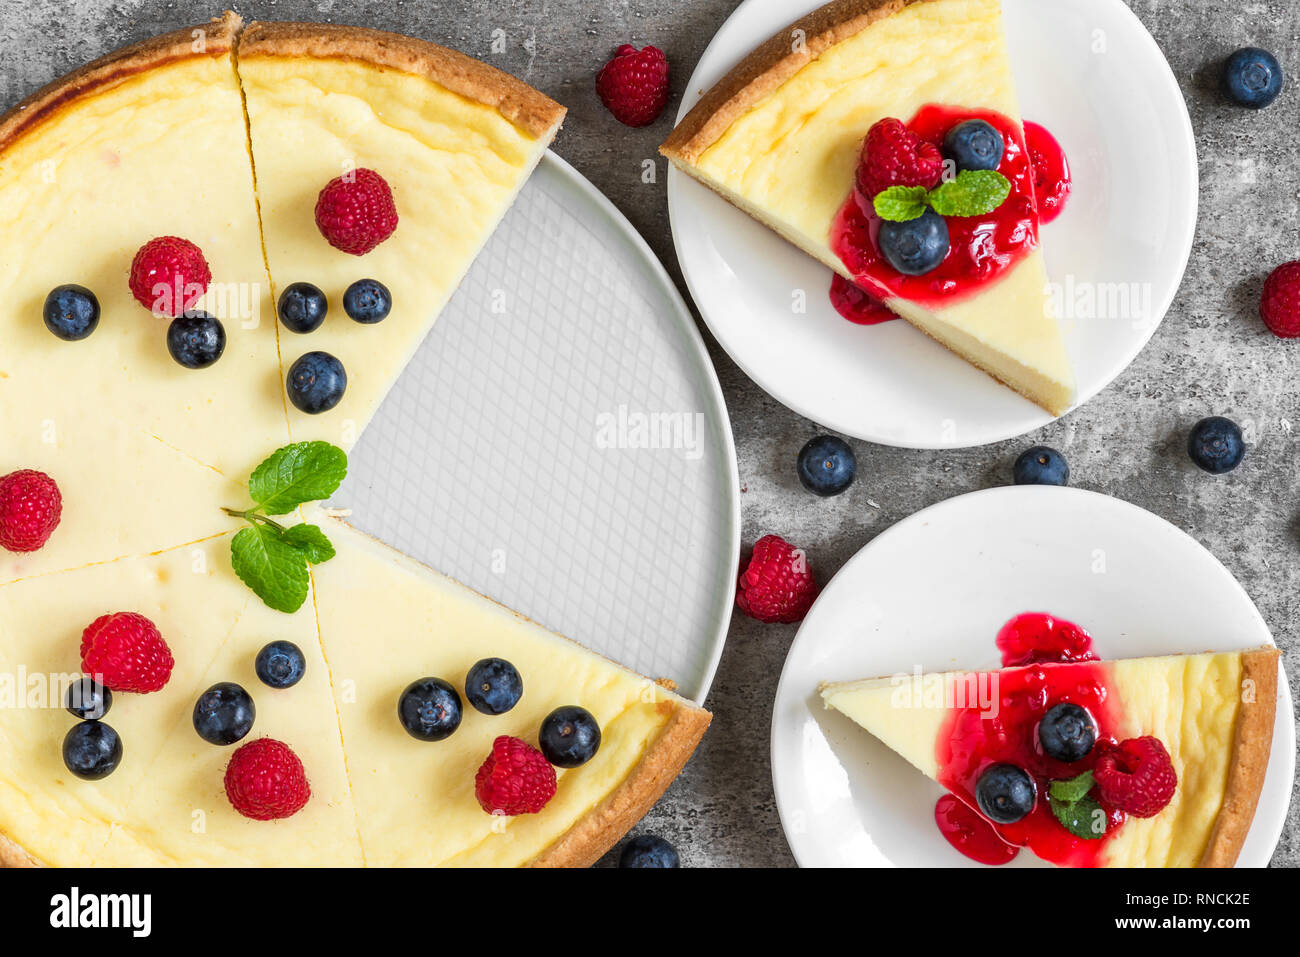 Gâteau au fromage avec deux tranches de gâteau avec les framboises, bleuets, de confiture et de menthe sur fond de béton. vue d'en haut. Bon petit déjeuner Banque D'Images